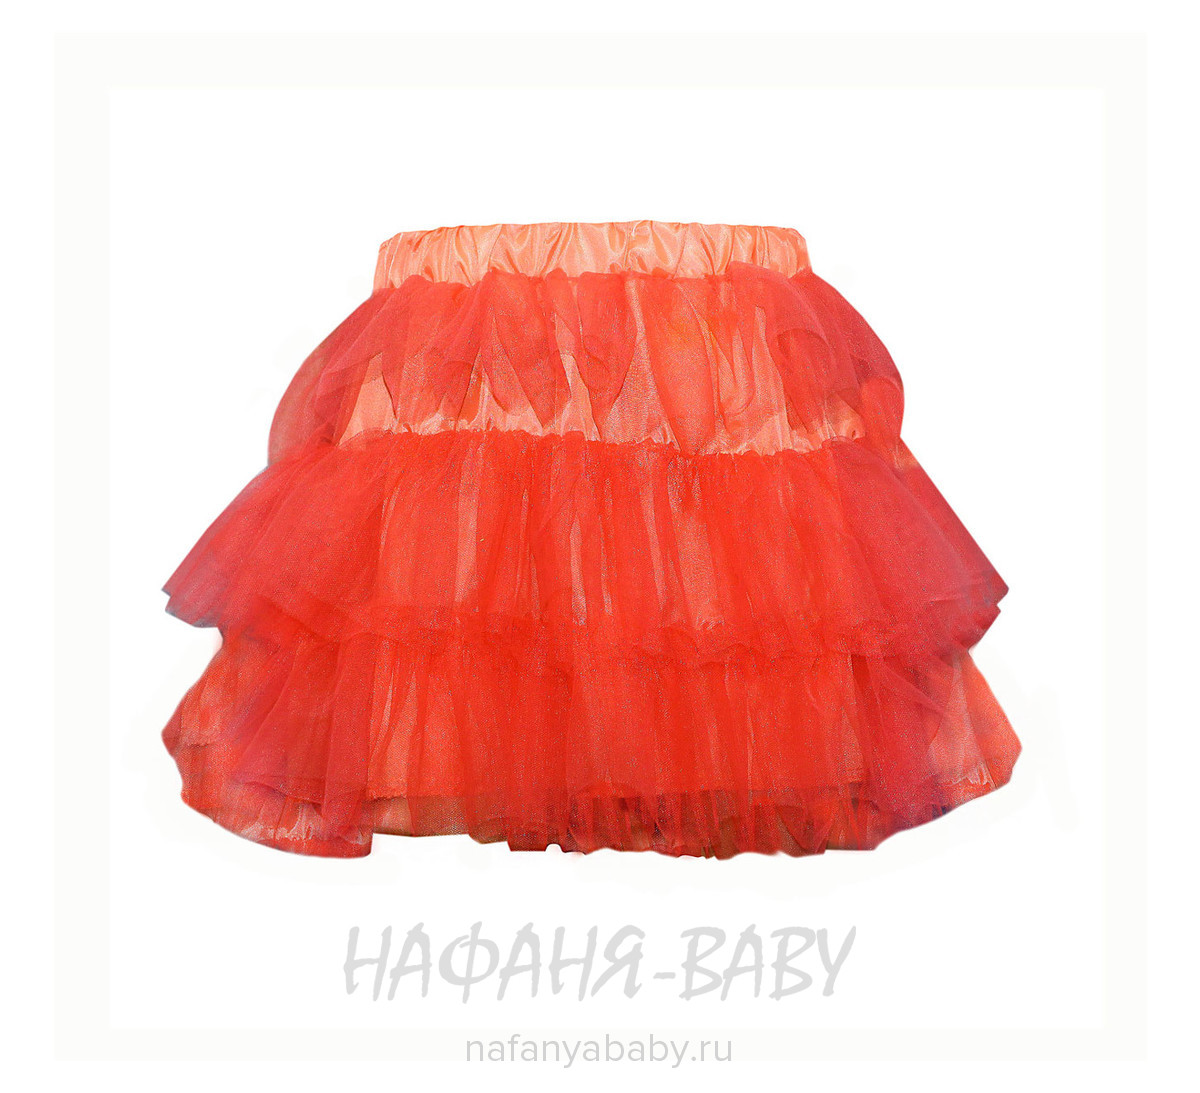 Детская юбка KGMART, купить в интернет магазине Нафаня. арт: 2233.